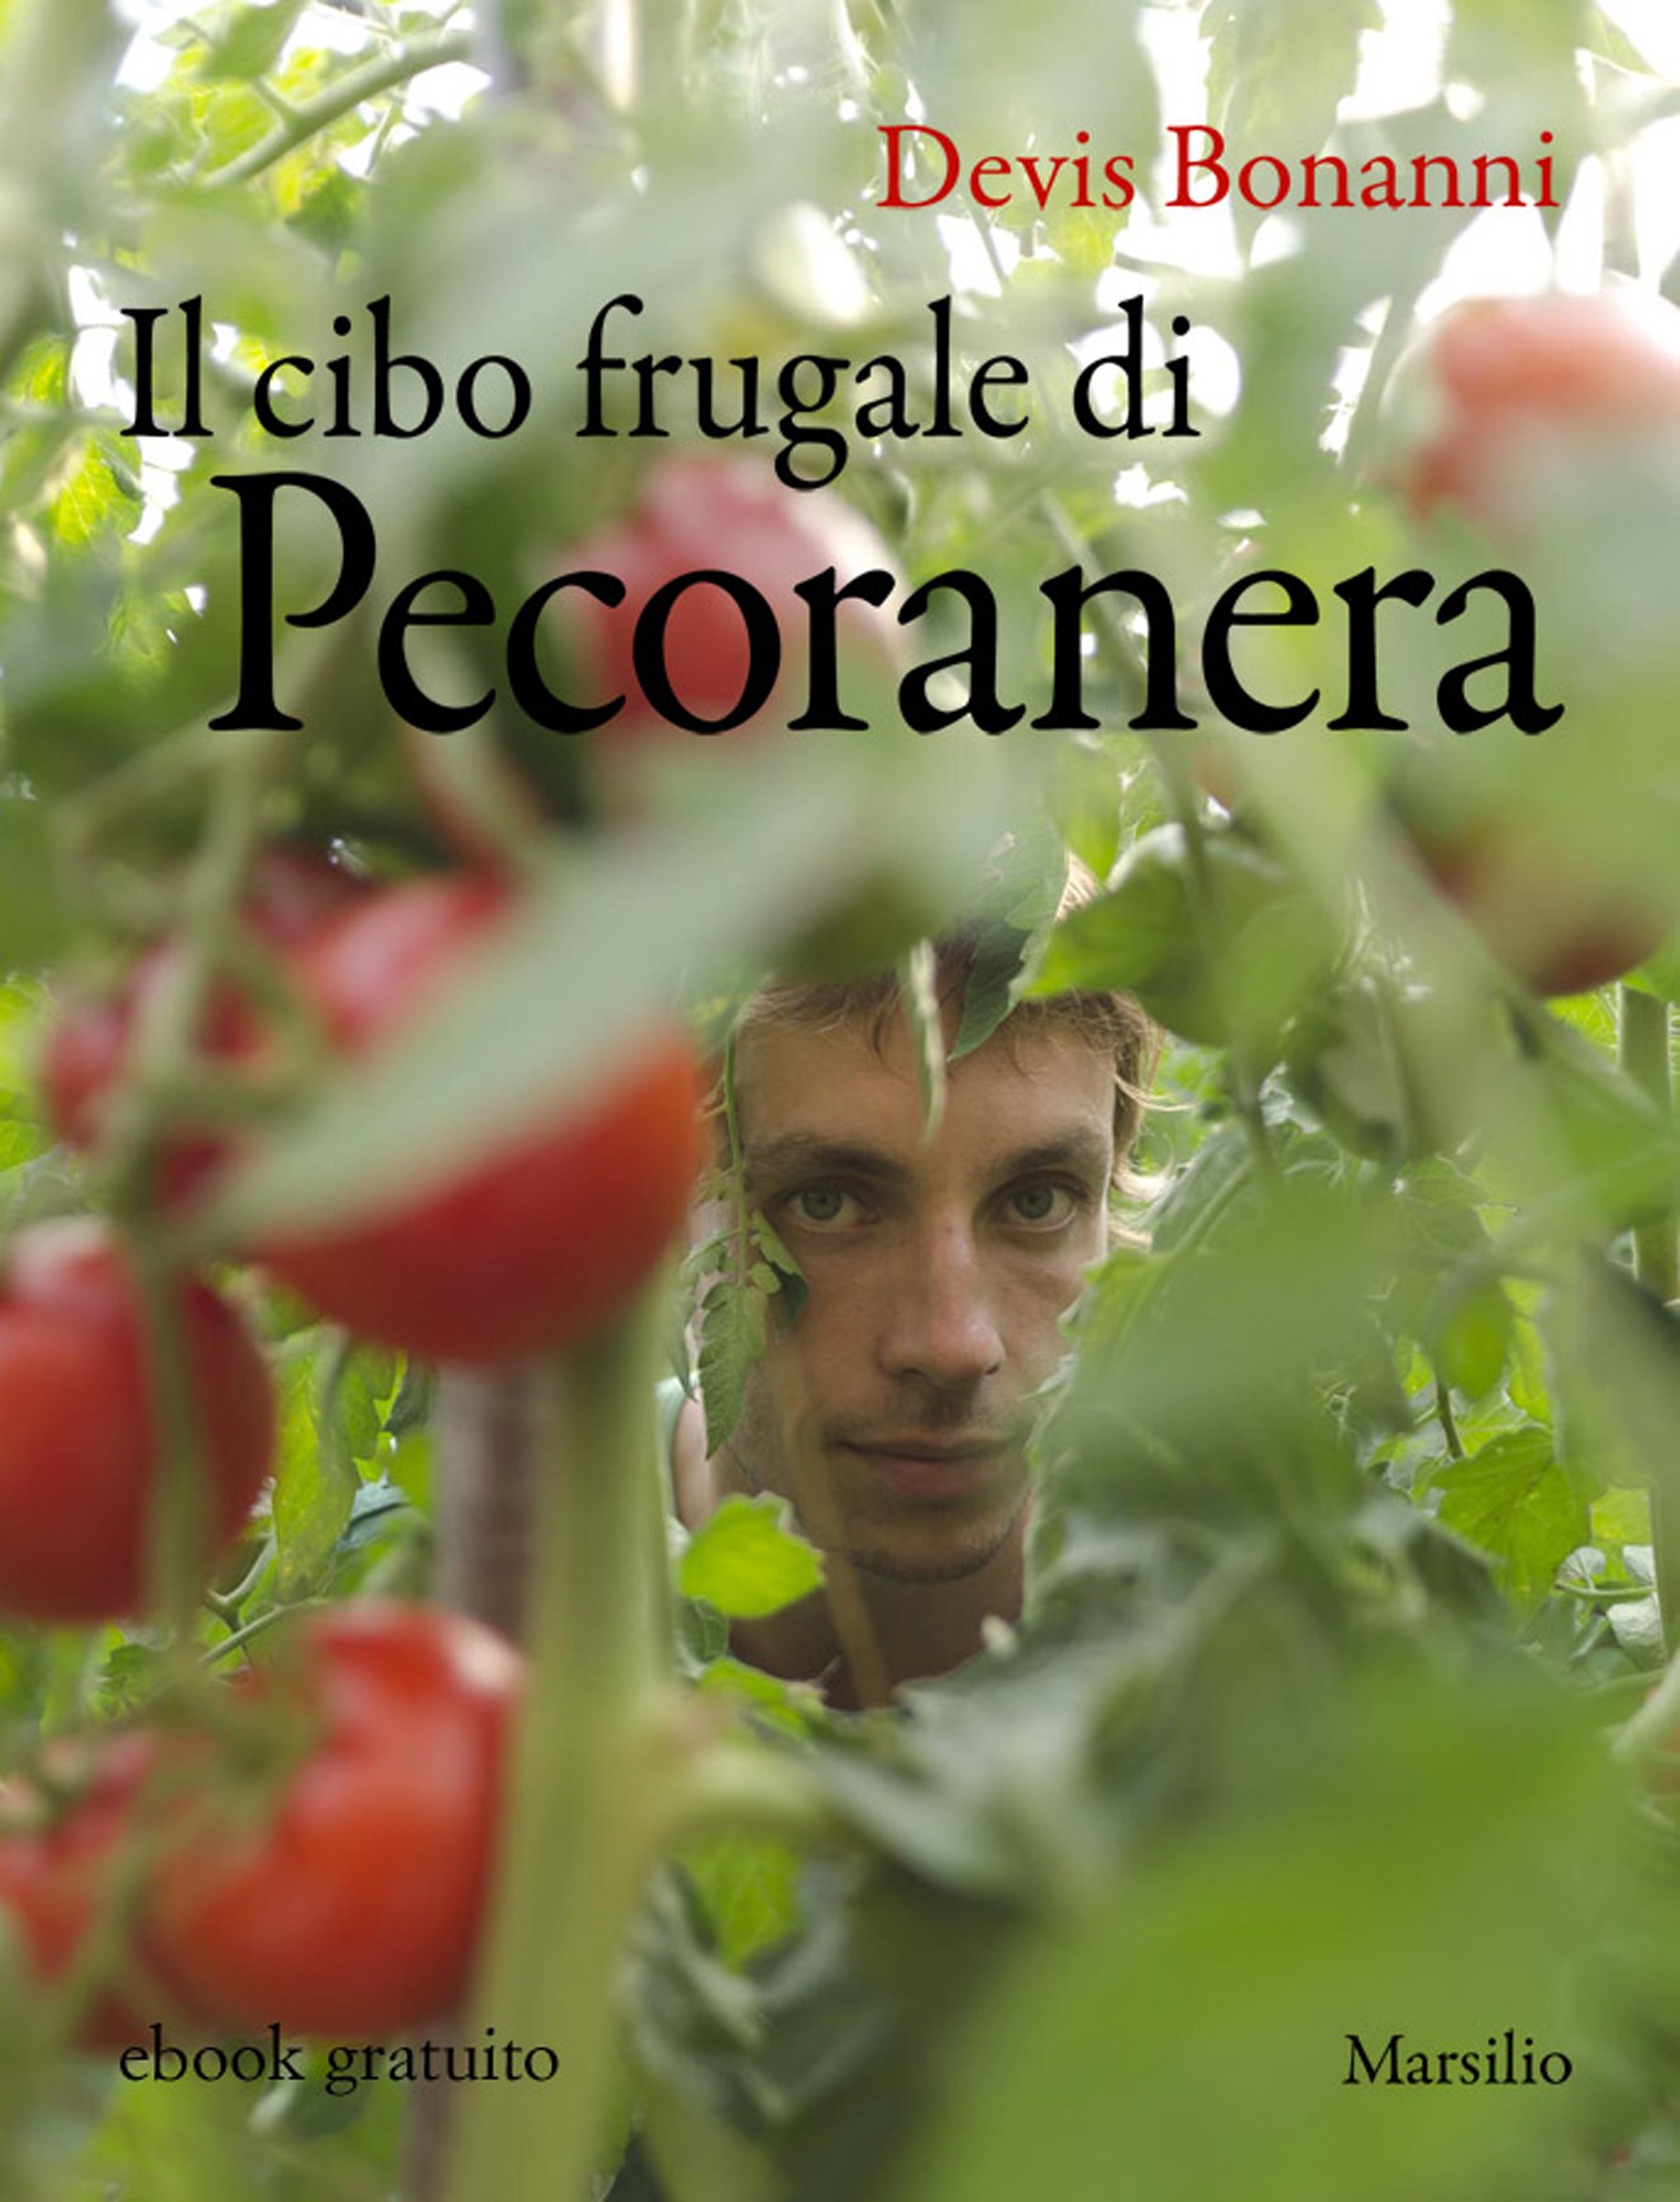 Il cibo frugale di Pecoranera: La riscoperta del piacere di coltivare da sé e nutrirsi di cibi semplici e naturali (Italian Edition)